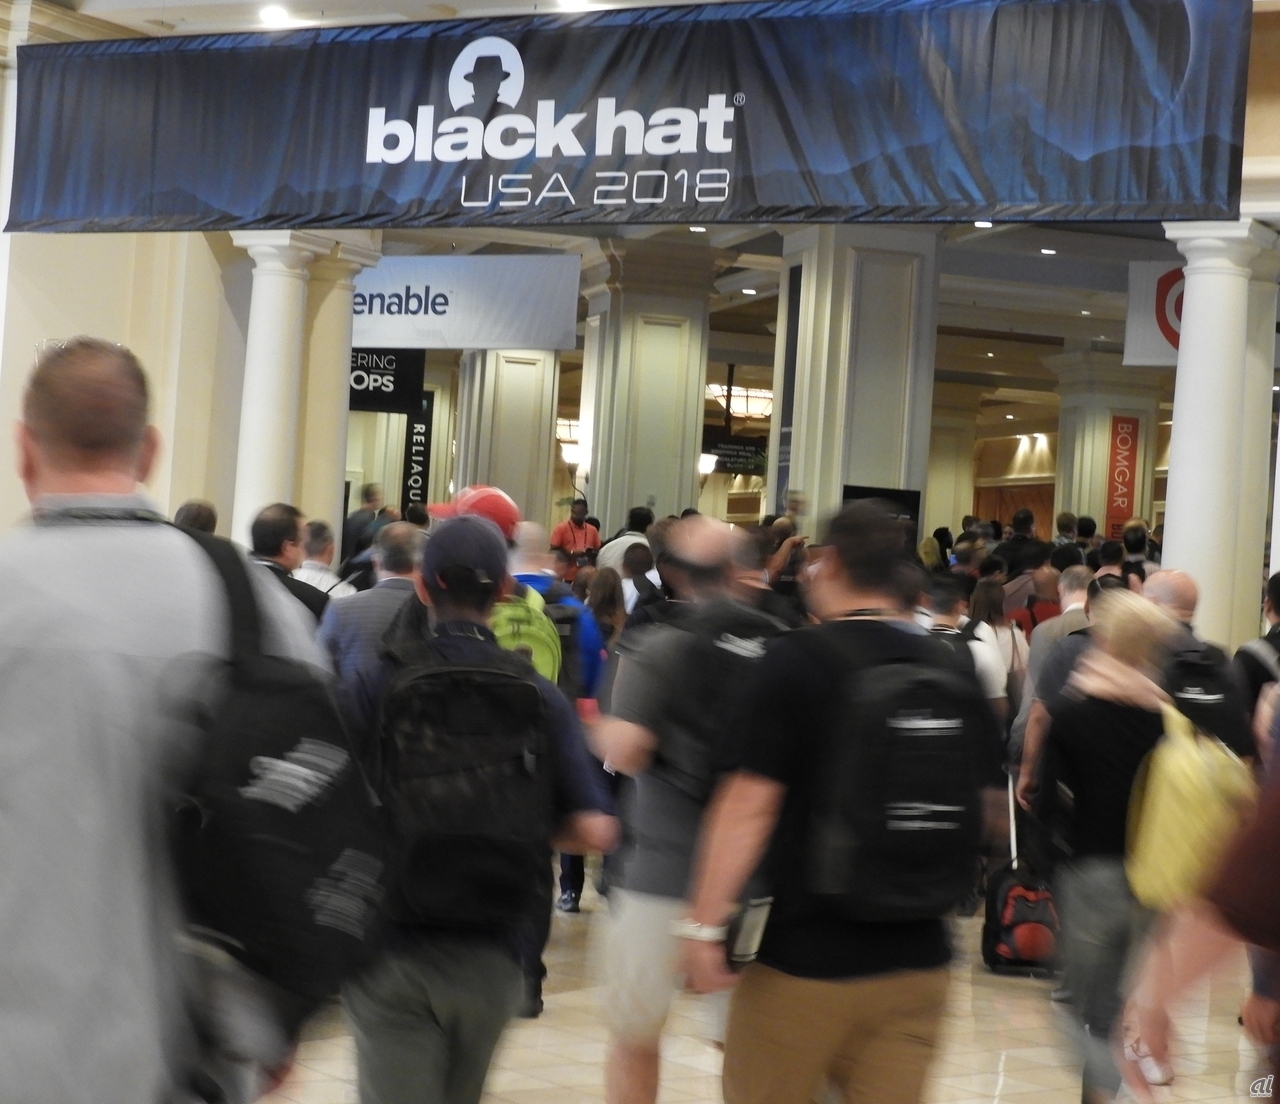 「Black Hat USA 2018」はラスベガスのホテルMandalay Bayで、8月4日から6日間の日程で開催された。21回目を数える今回は、世界112カ国から1万7000人が詰めかけた。会期中は120超のセッションと80超の技術トレーニングプログラムが開かれた。